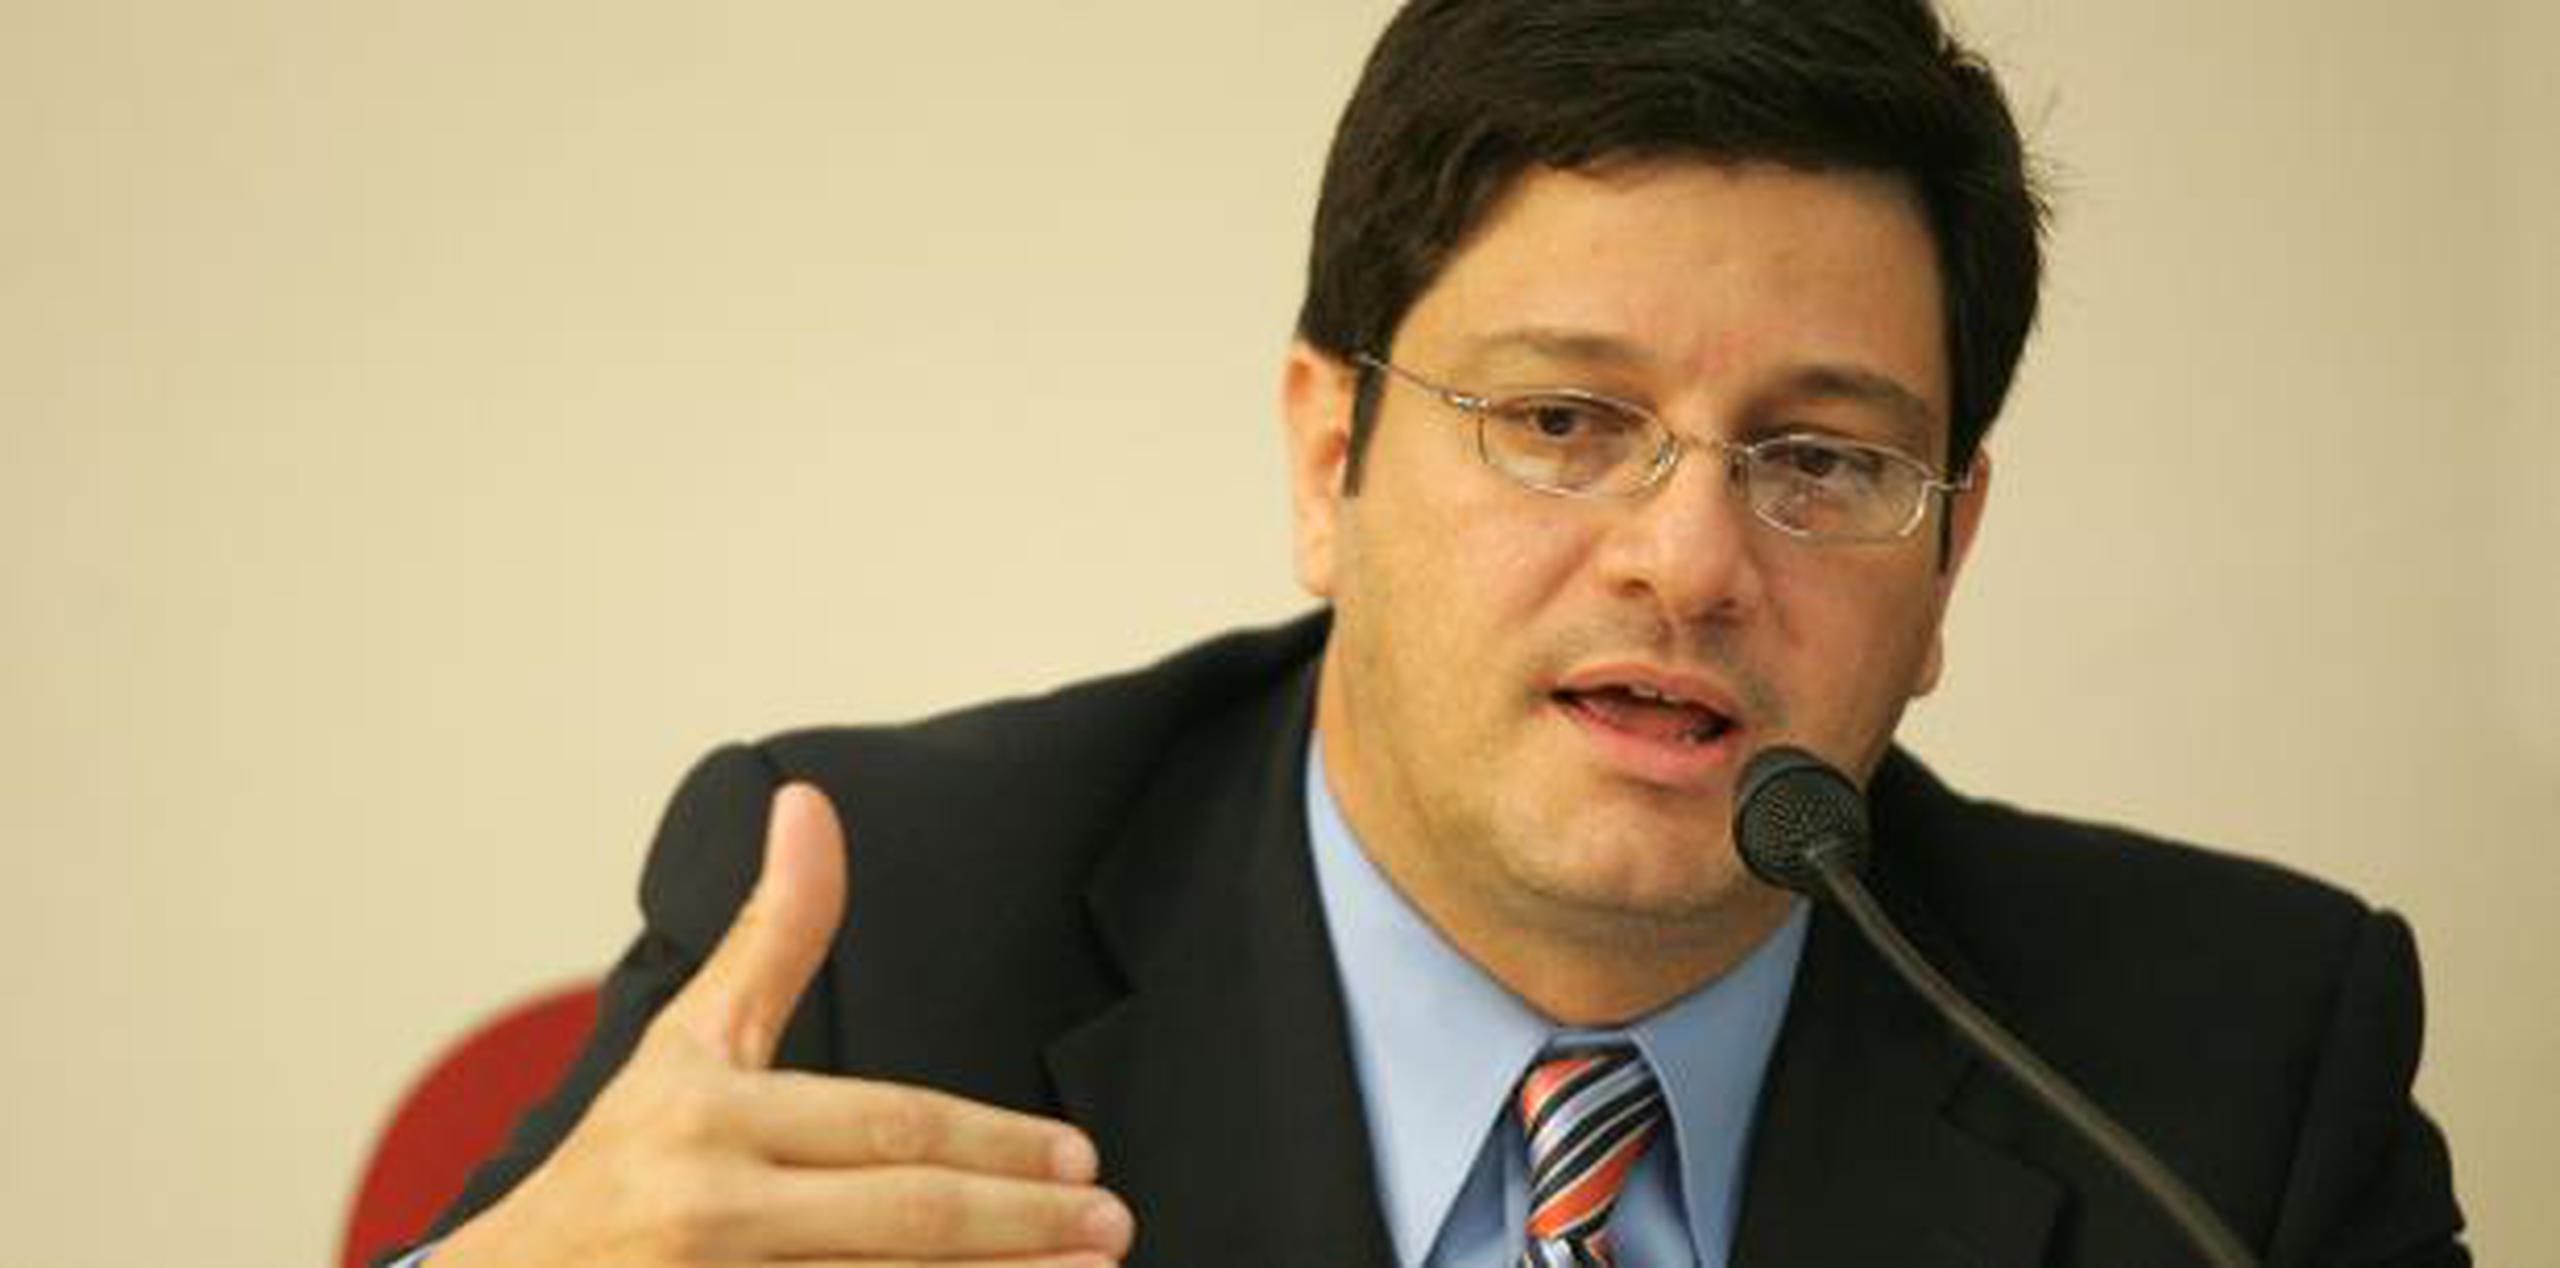 Sánchez Acosta se ha destacado además por ser analista legal y político de programas radiales y columnista. (archivo)